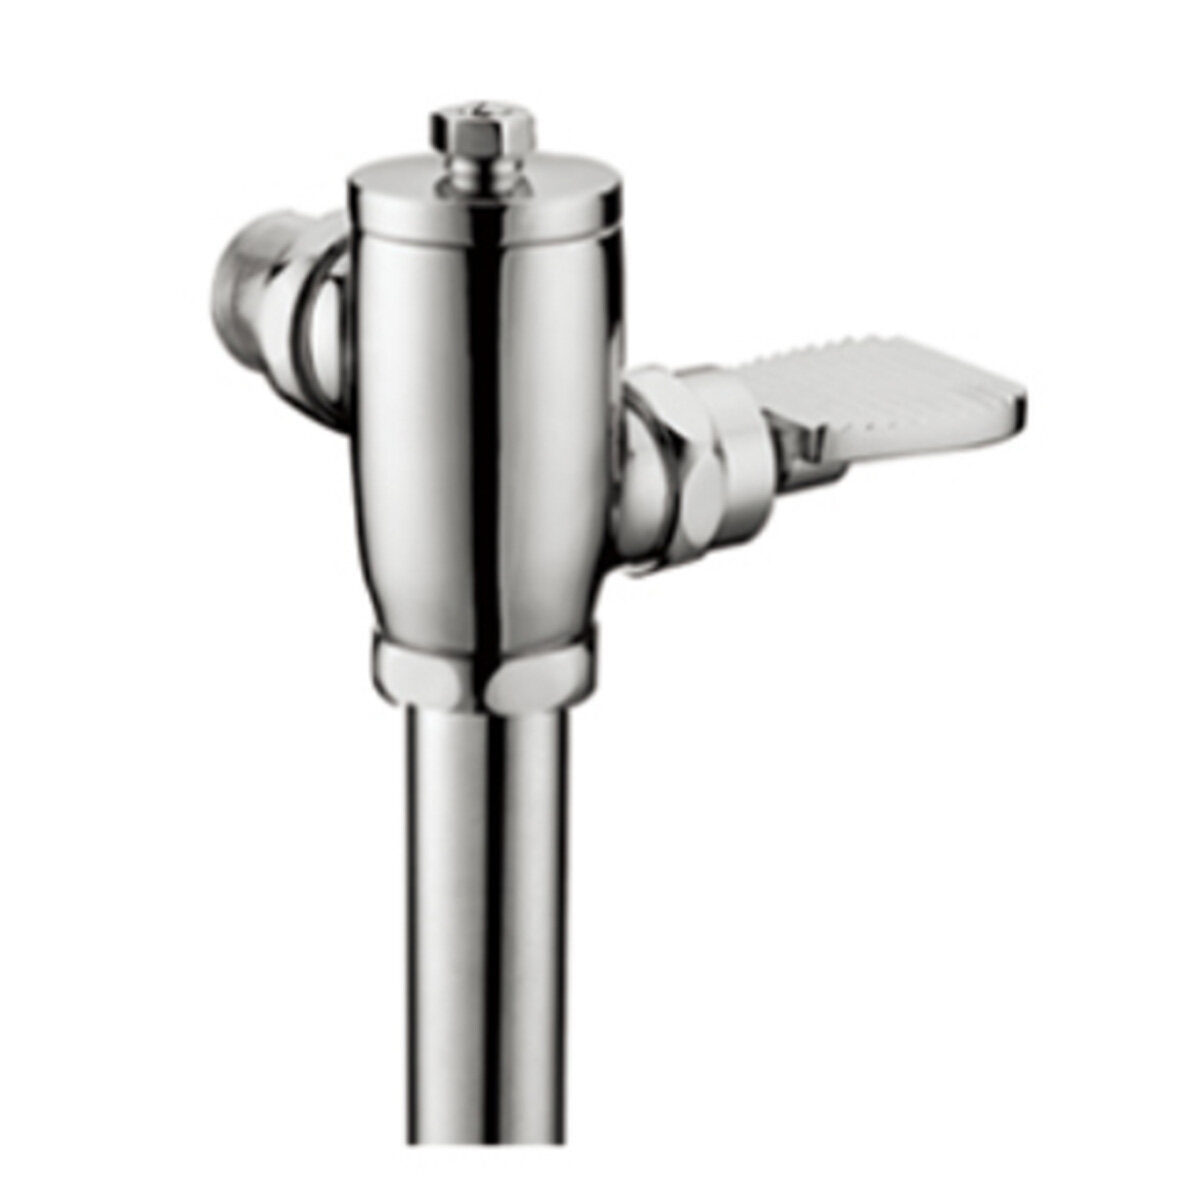 faucet with mixing valve, faucet mixer tap, faucet mixer, water mixer faucet, mixer tap faucet